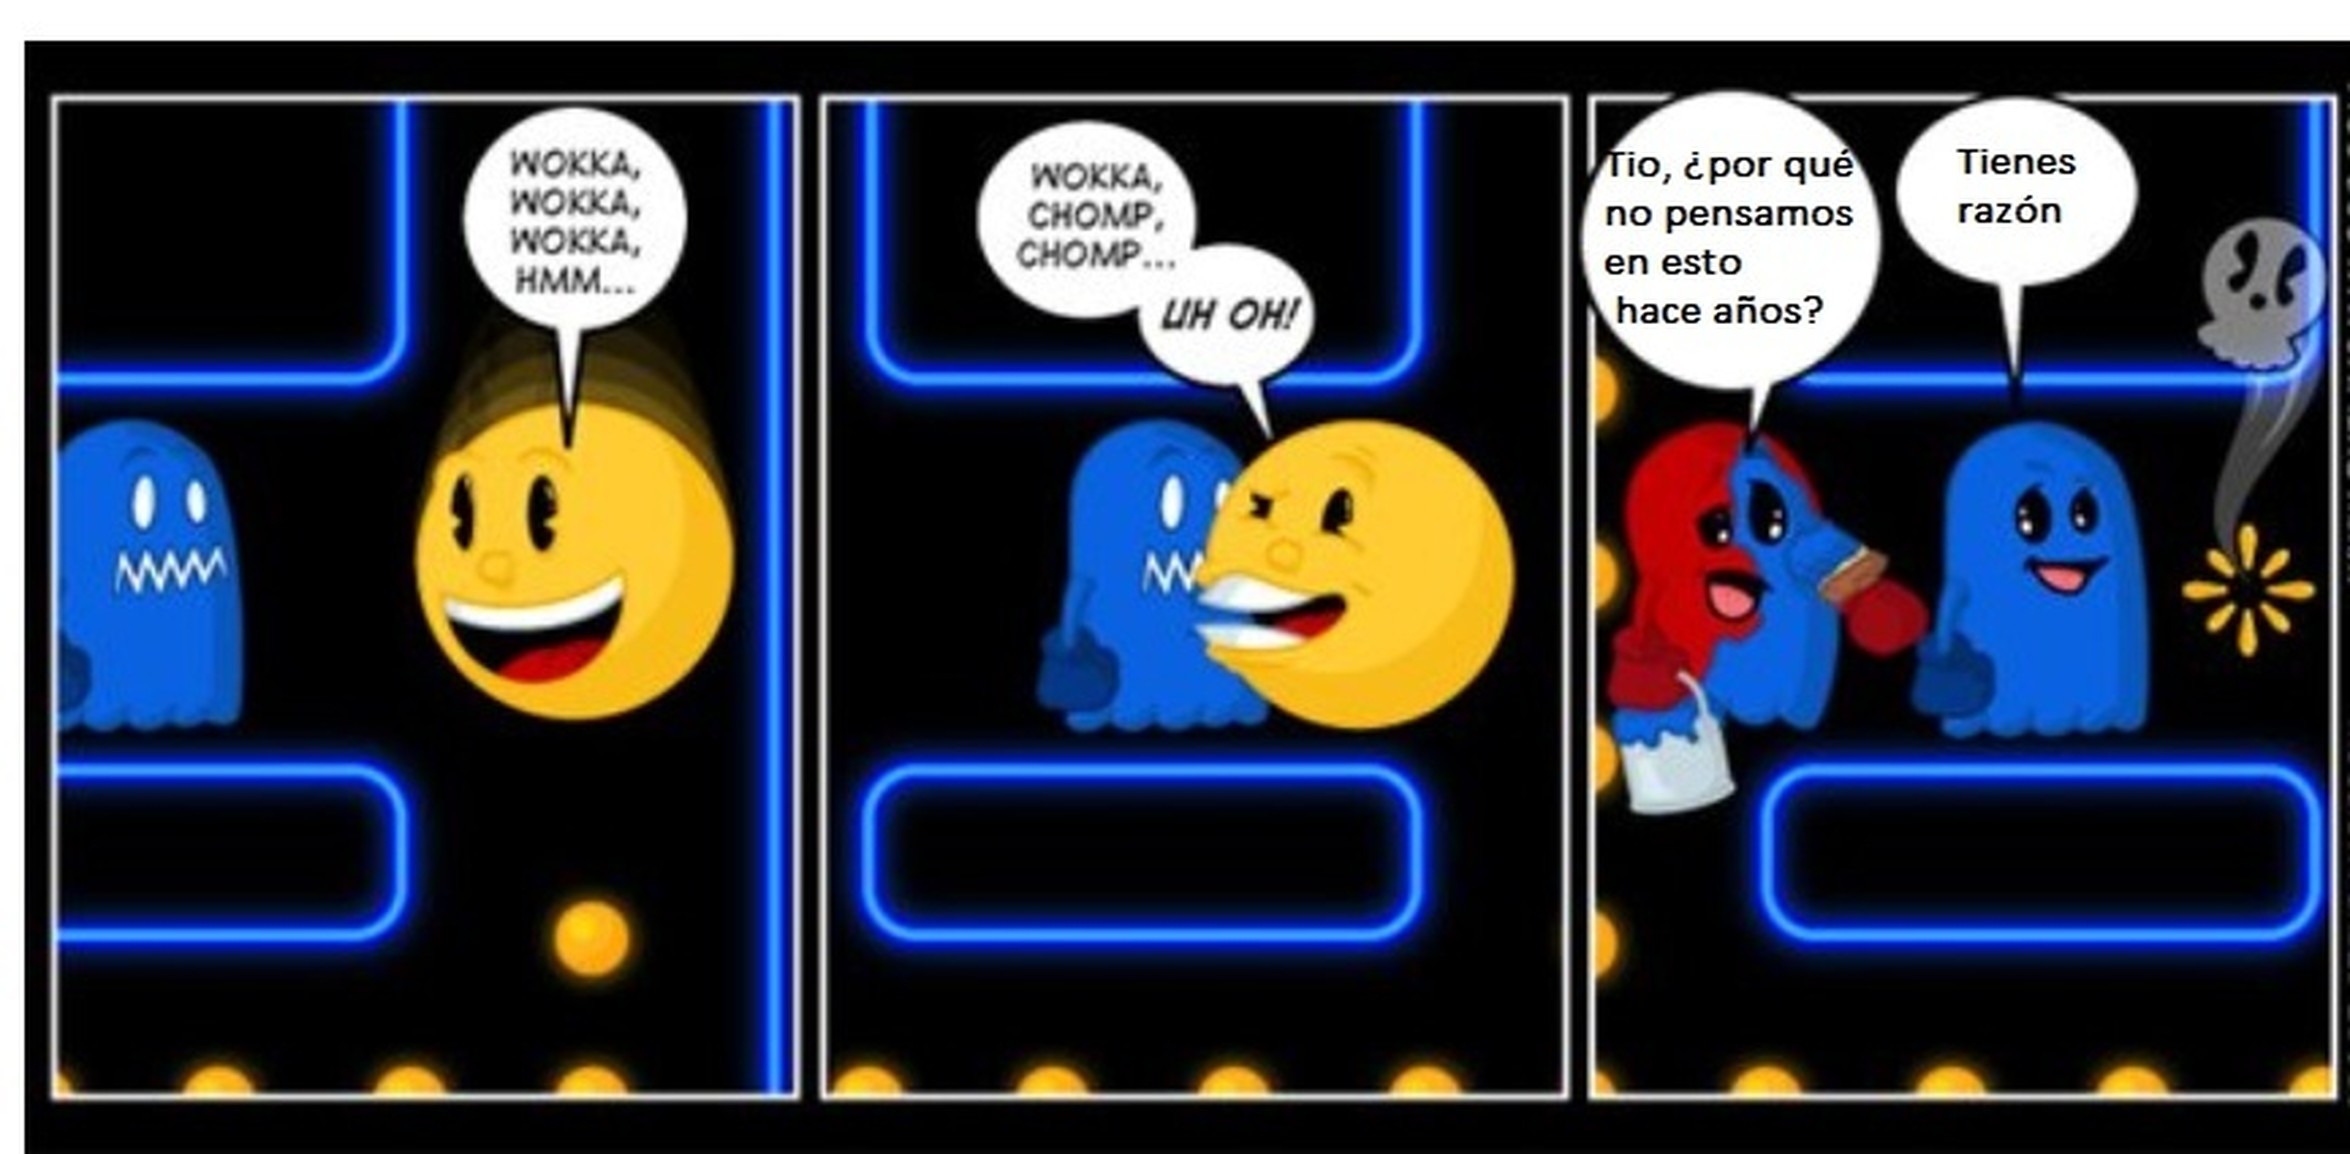 VRUTAL / El engaño de los fantasmas de Pac-Man.